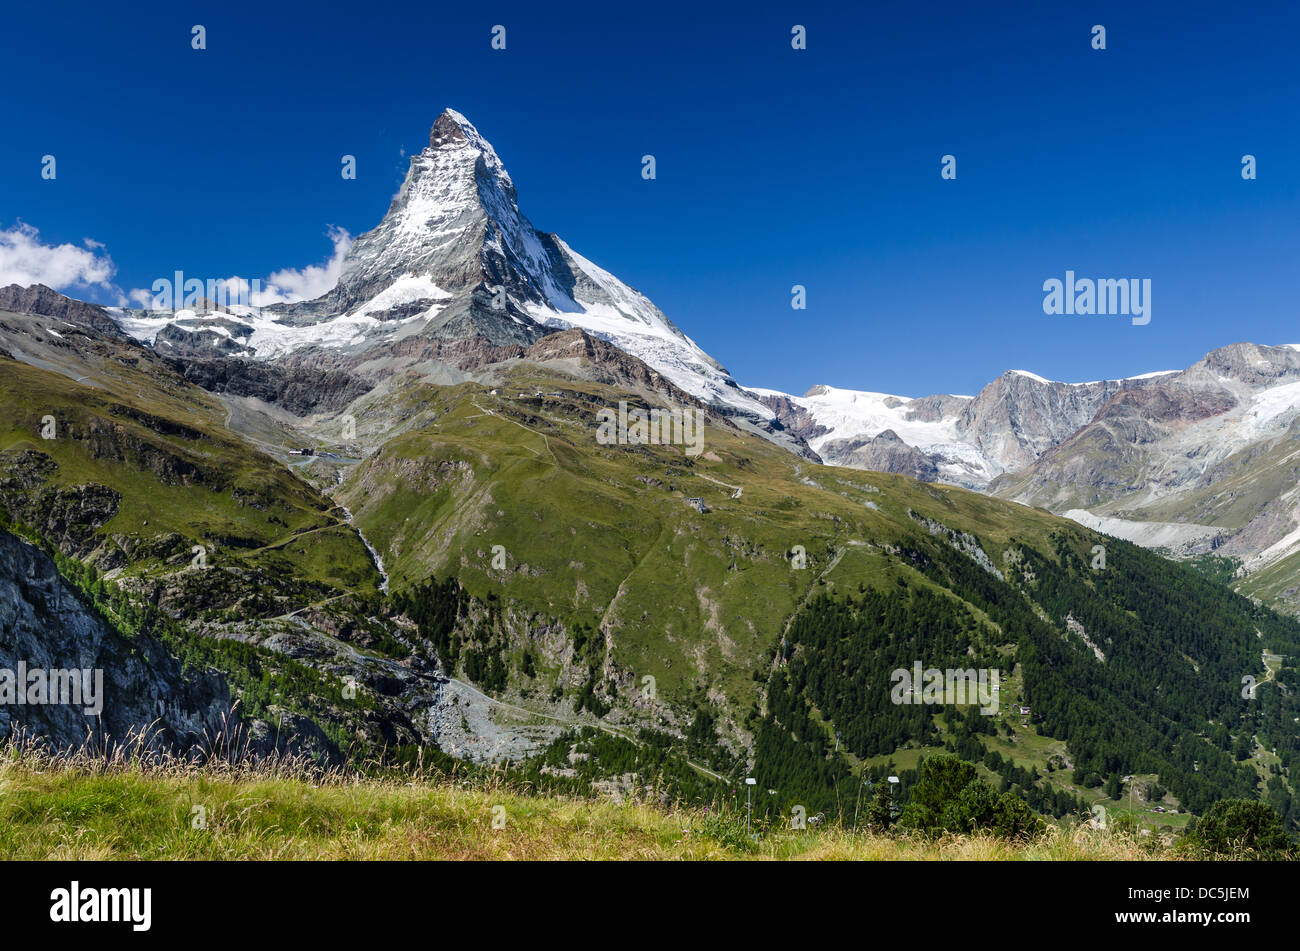 Matterhorn (Monte Cervino) est l'un des plus hauts sommets d'Europe. Zermatt, Suisse. Banque D'Images